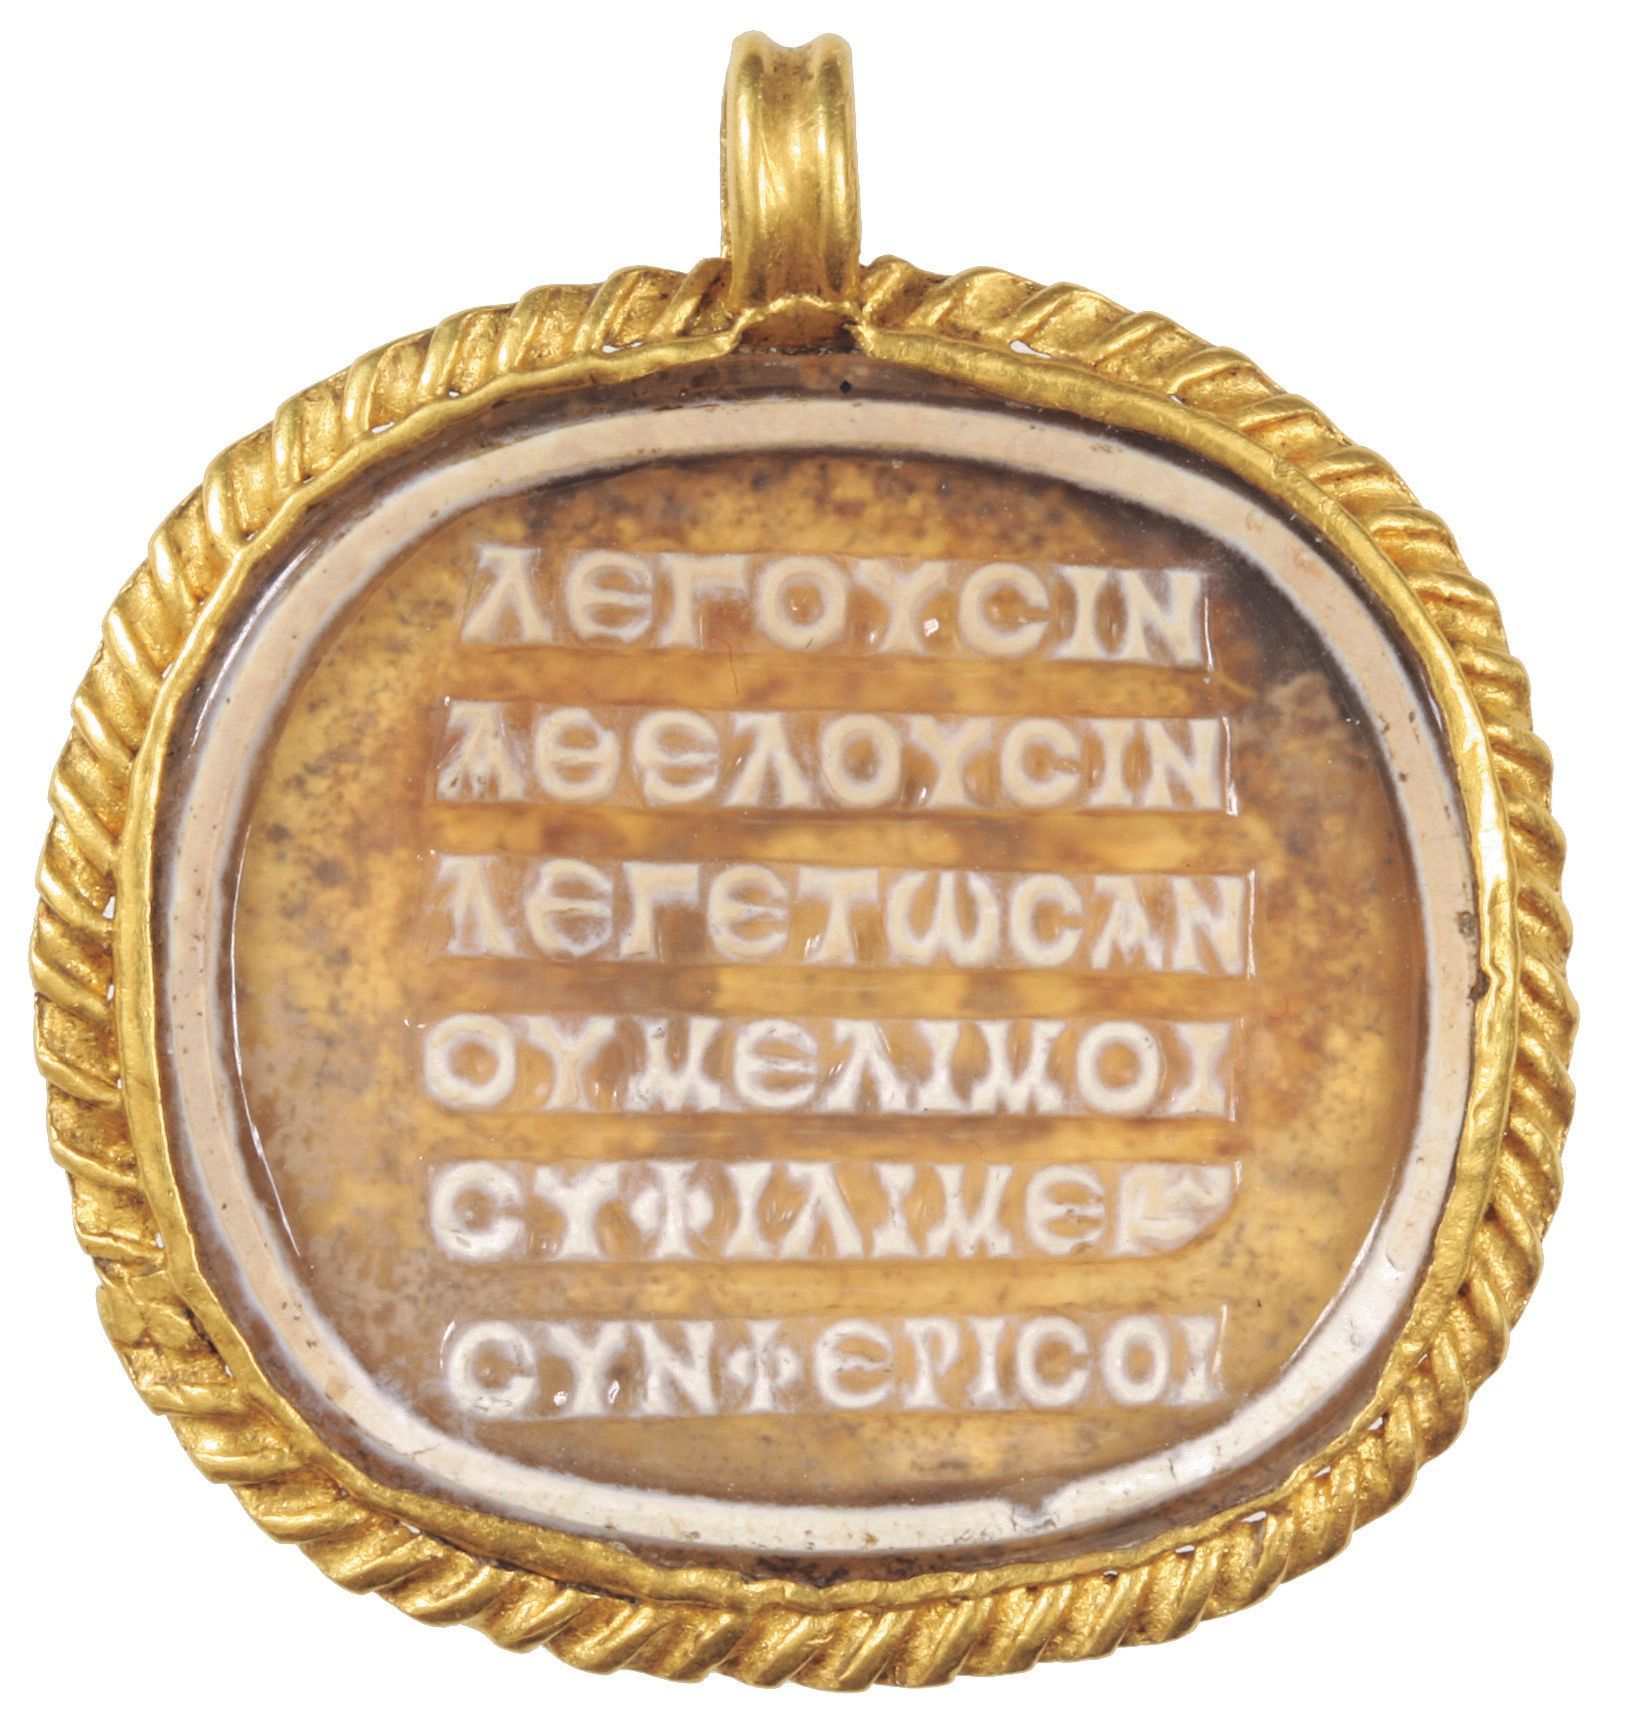 Το ποίημα που είναι εγγεγραμμένο σε ένα καμέο σε ένα μετάλλιο από γυάλινη πάστα (2ος έως 3ος αιώνας Κ.Χ.) που βρέθηκε σε μια σαρκοφάγο γύρω από το λαιμό μιας νεκρής νεαρής γυναίκας στη σημερινή Ουγγαρία.  Εικόνα: Μουσείο BHM Aquincum και Αρχαιολογικό Πάρκο / Péter Komjáthy